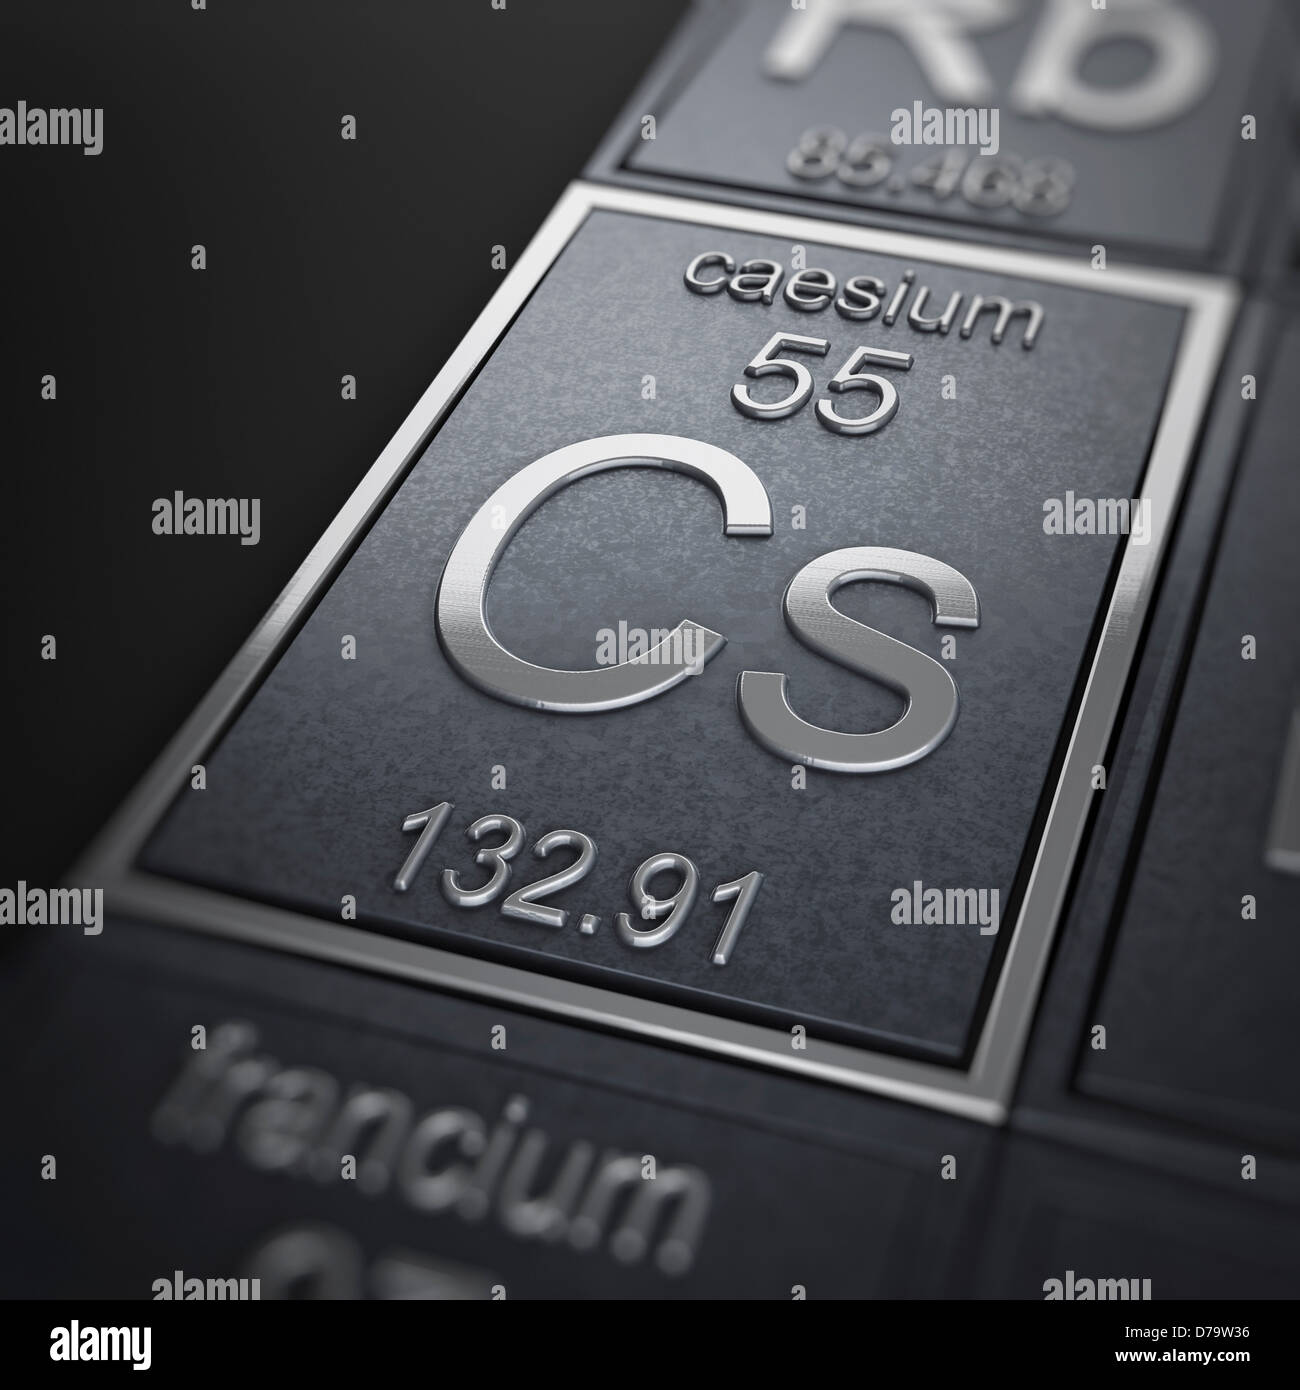 caesium price